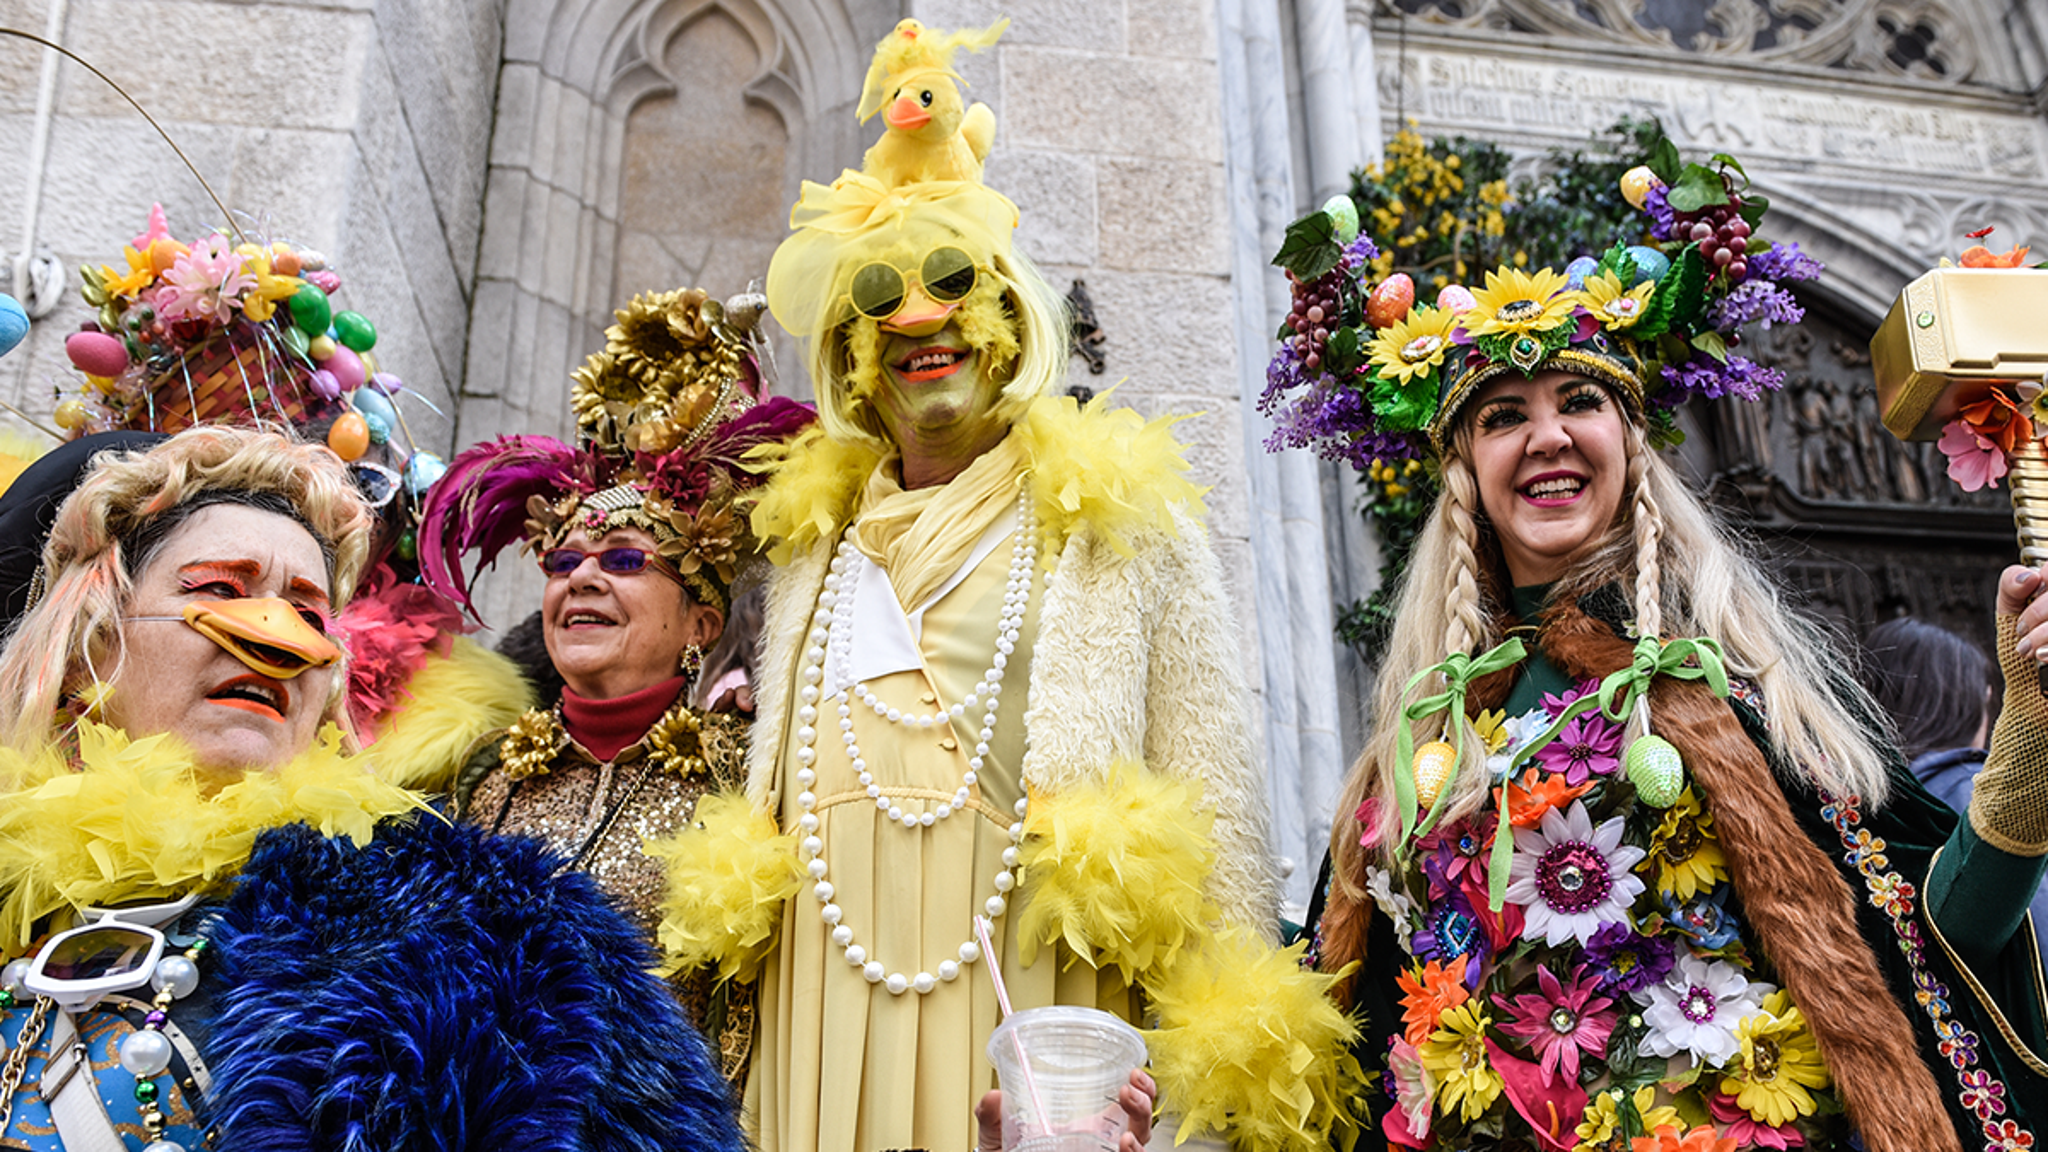 NYC's Easter Bonnet Parade Draws Wild Outfits, 'Tis the Season! thumbnail